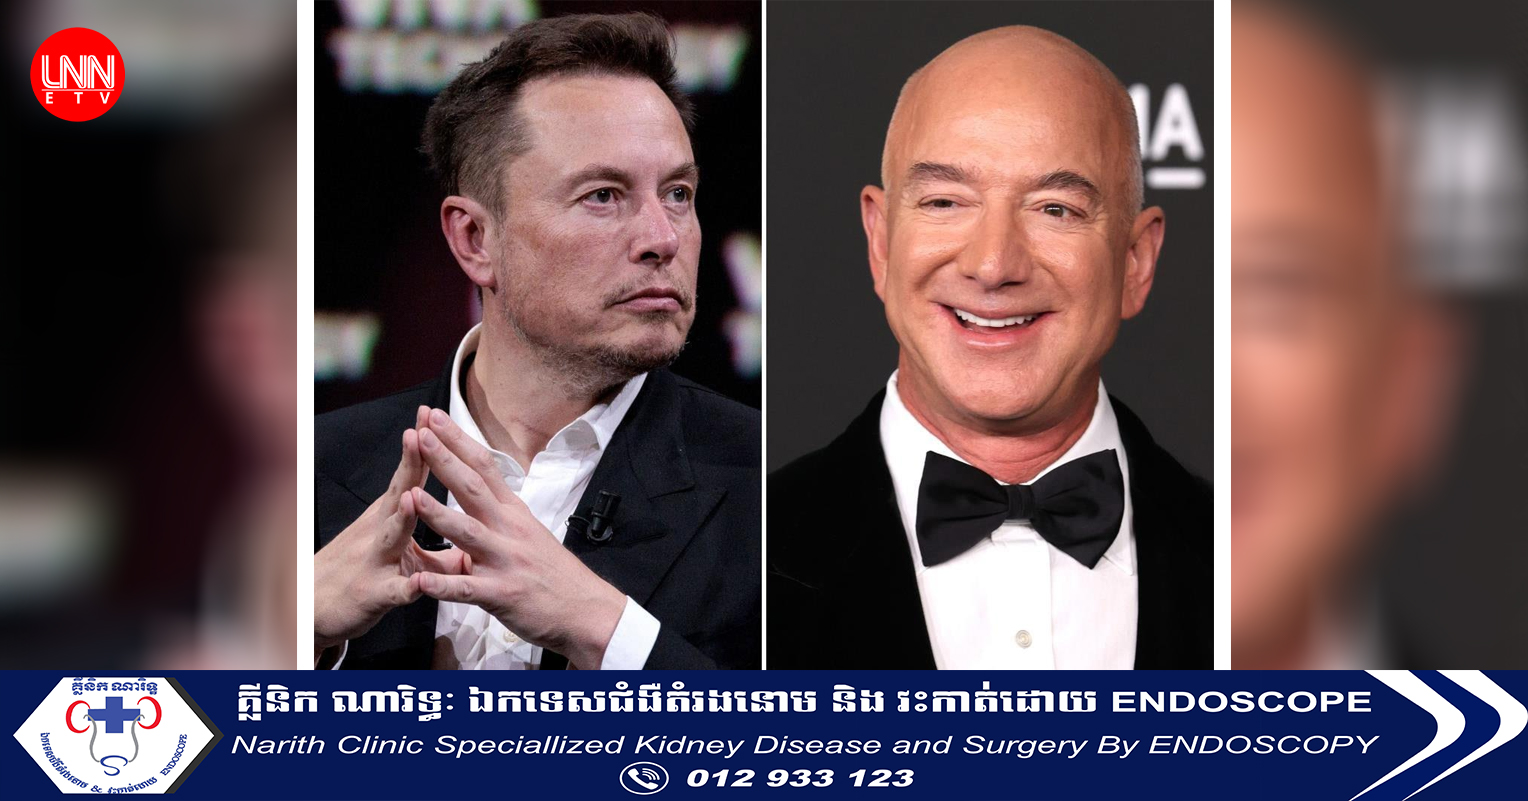 លោក Jeff Bezos បានវ៉ាដាច់កំពូលមហាសេដ្ឋី Elon Musk ក្លាយជាអ្នកមានបំផុតនៅលើពិភពលោក